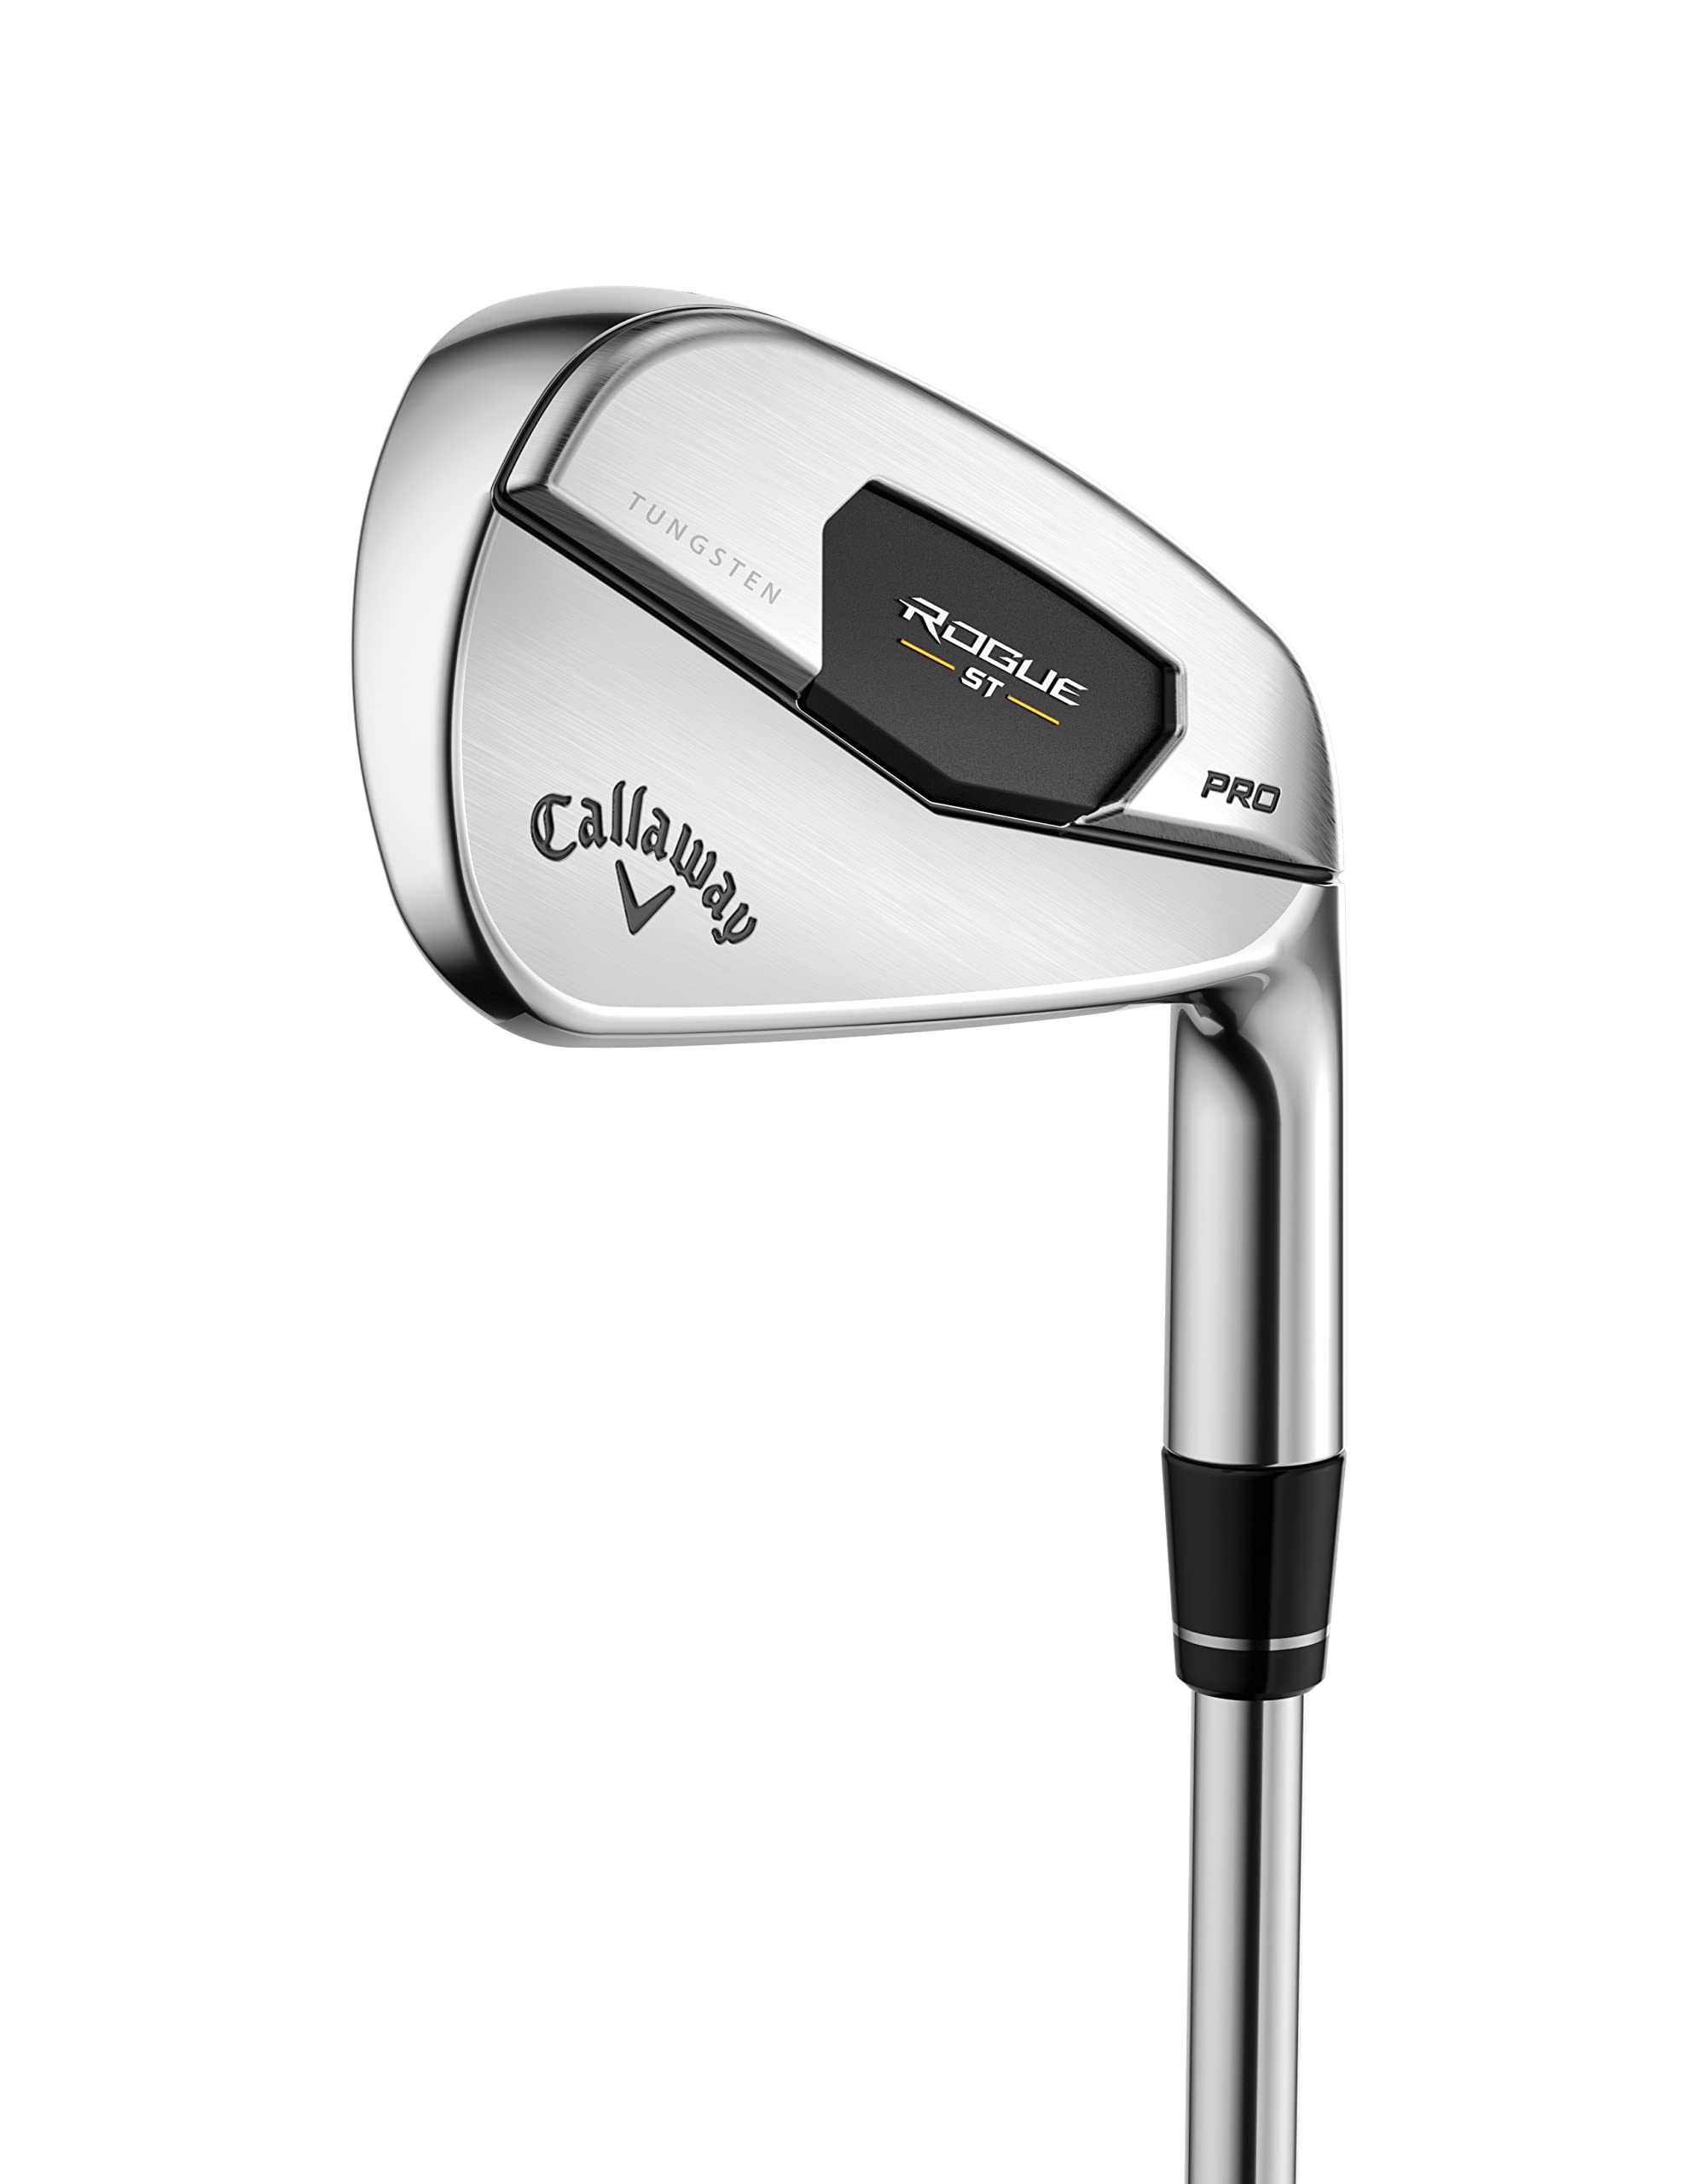 Callaway Golf Rogue ST Pro Iron Set